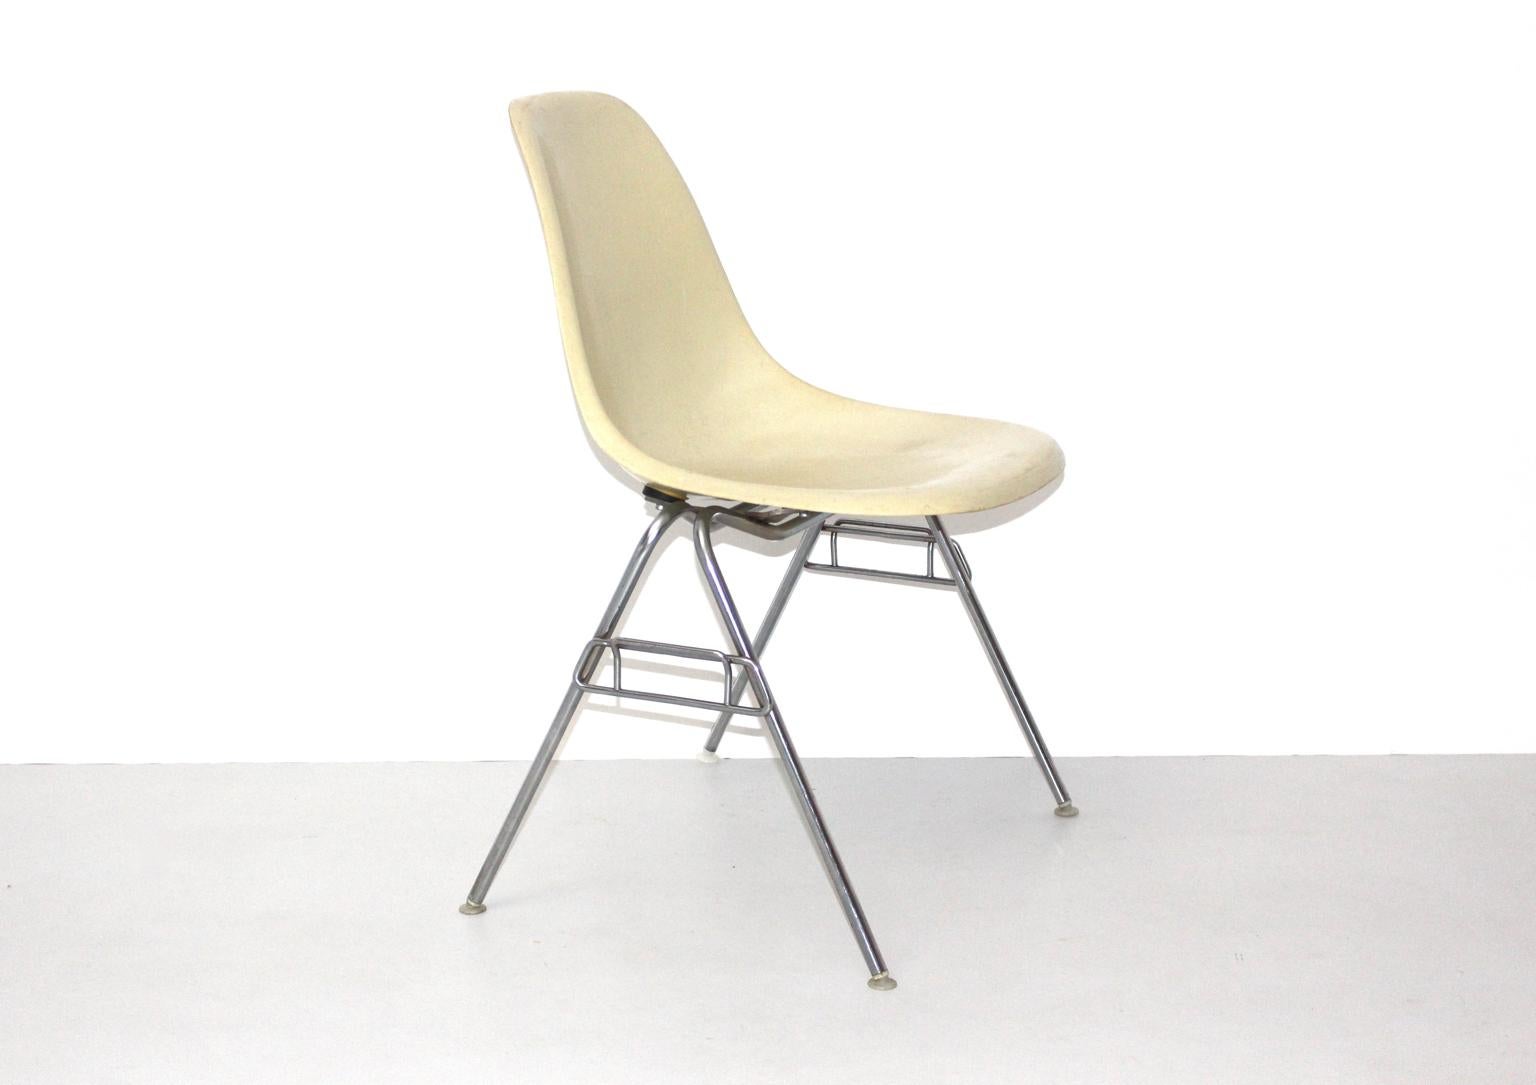 Mid Century Modern Vintage Modell DSS-N Fiberglas Stuhl wurde von Charles & Ray Eames entworfen und von Hermann Miller, Zeeland, Michigan USA produziert. Darunter befindet sich ein Label.
Verchromter Stahlrohrrahmen mit elfenbeinfarbener